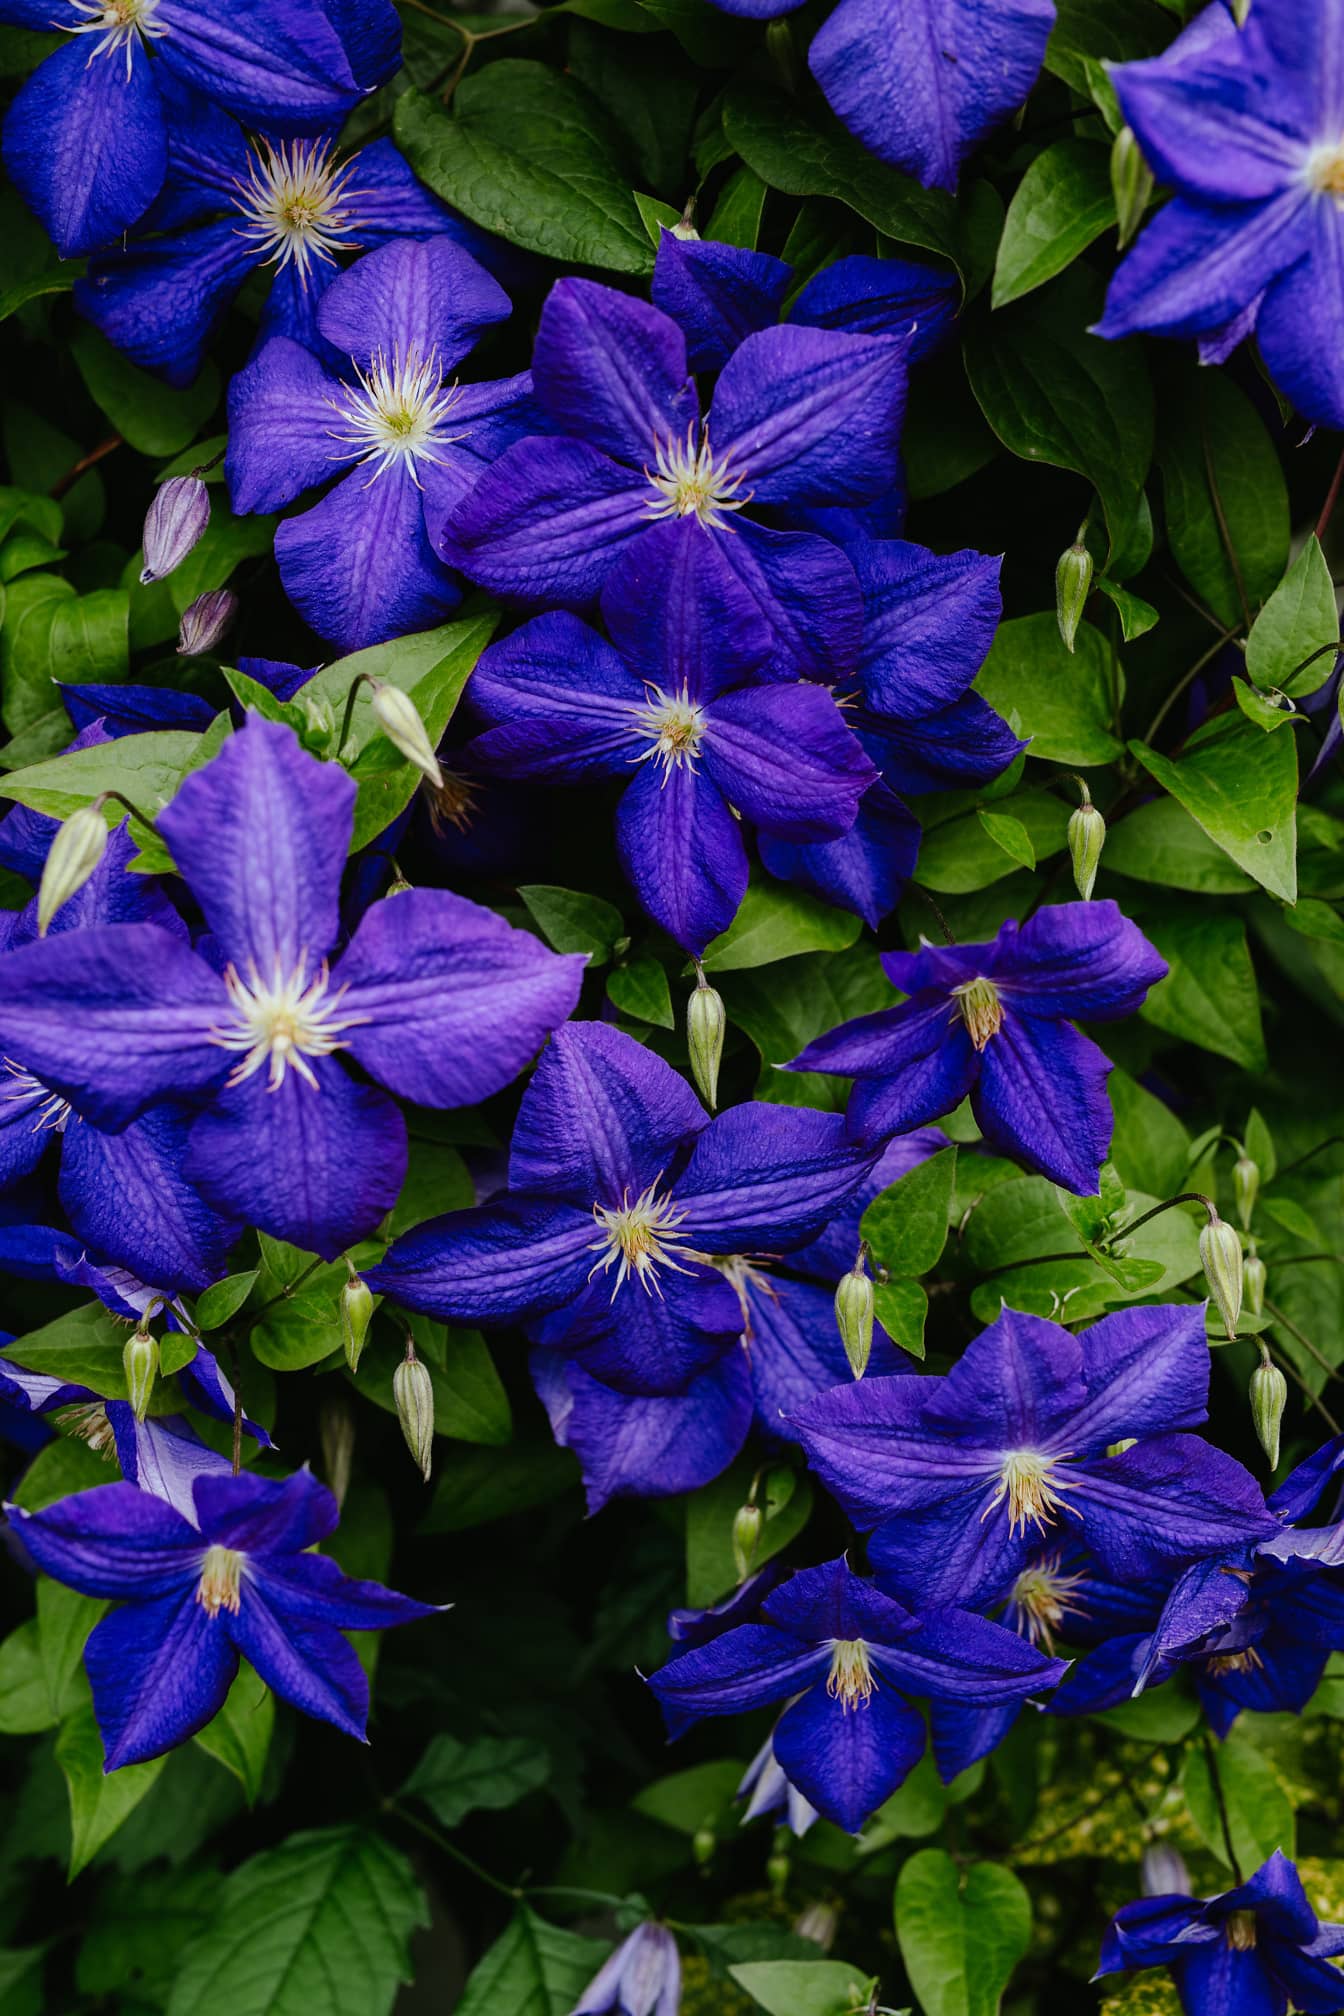 亚洲处女的蝴蝶结 (Clematis florida) 深蓝色紫色花朵特写